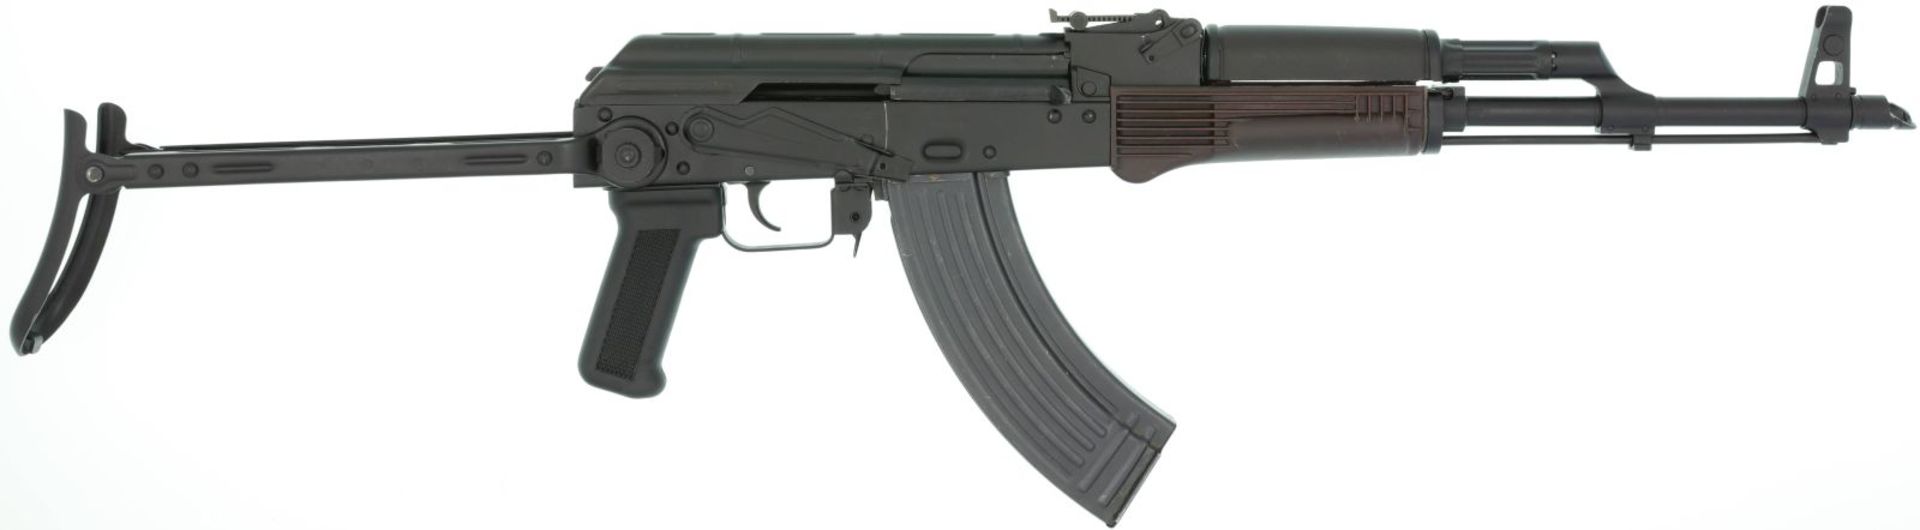 Selbstladebüchse, auf der Basis des AK103, Kal. 7.62x39@ LL 430mm, TL 910mm, Gasdrucklader mit